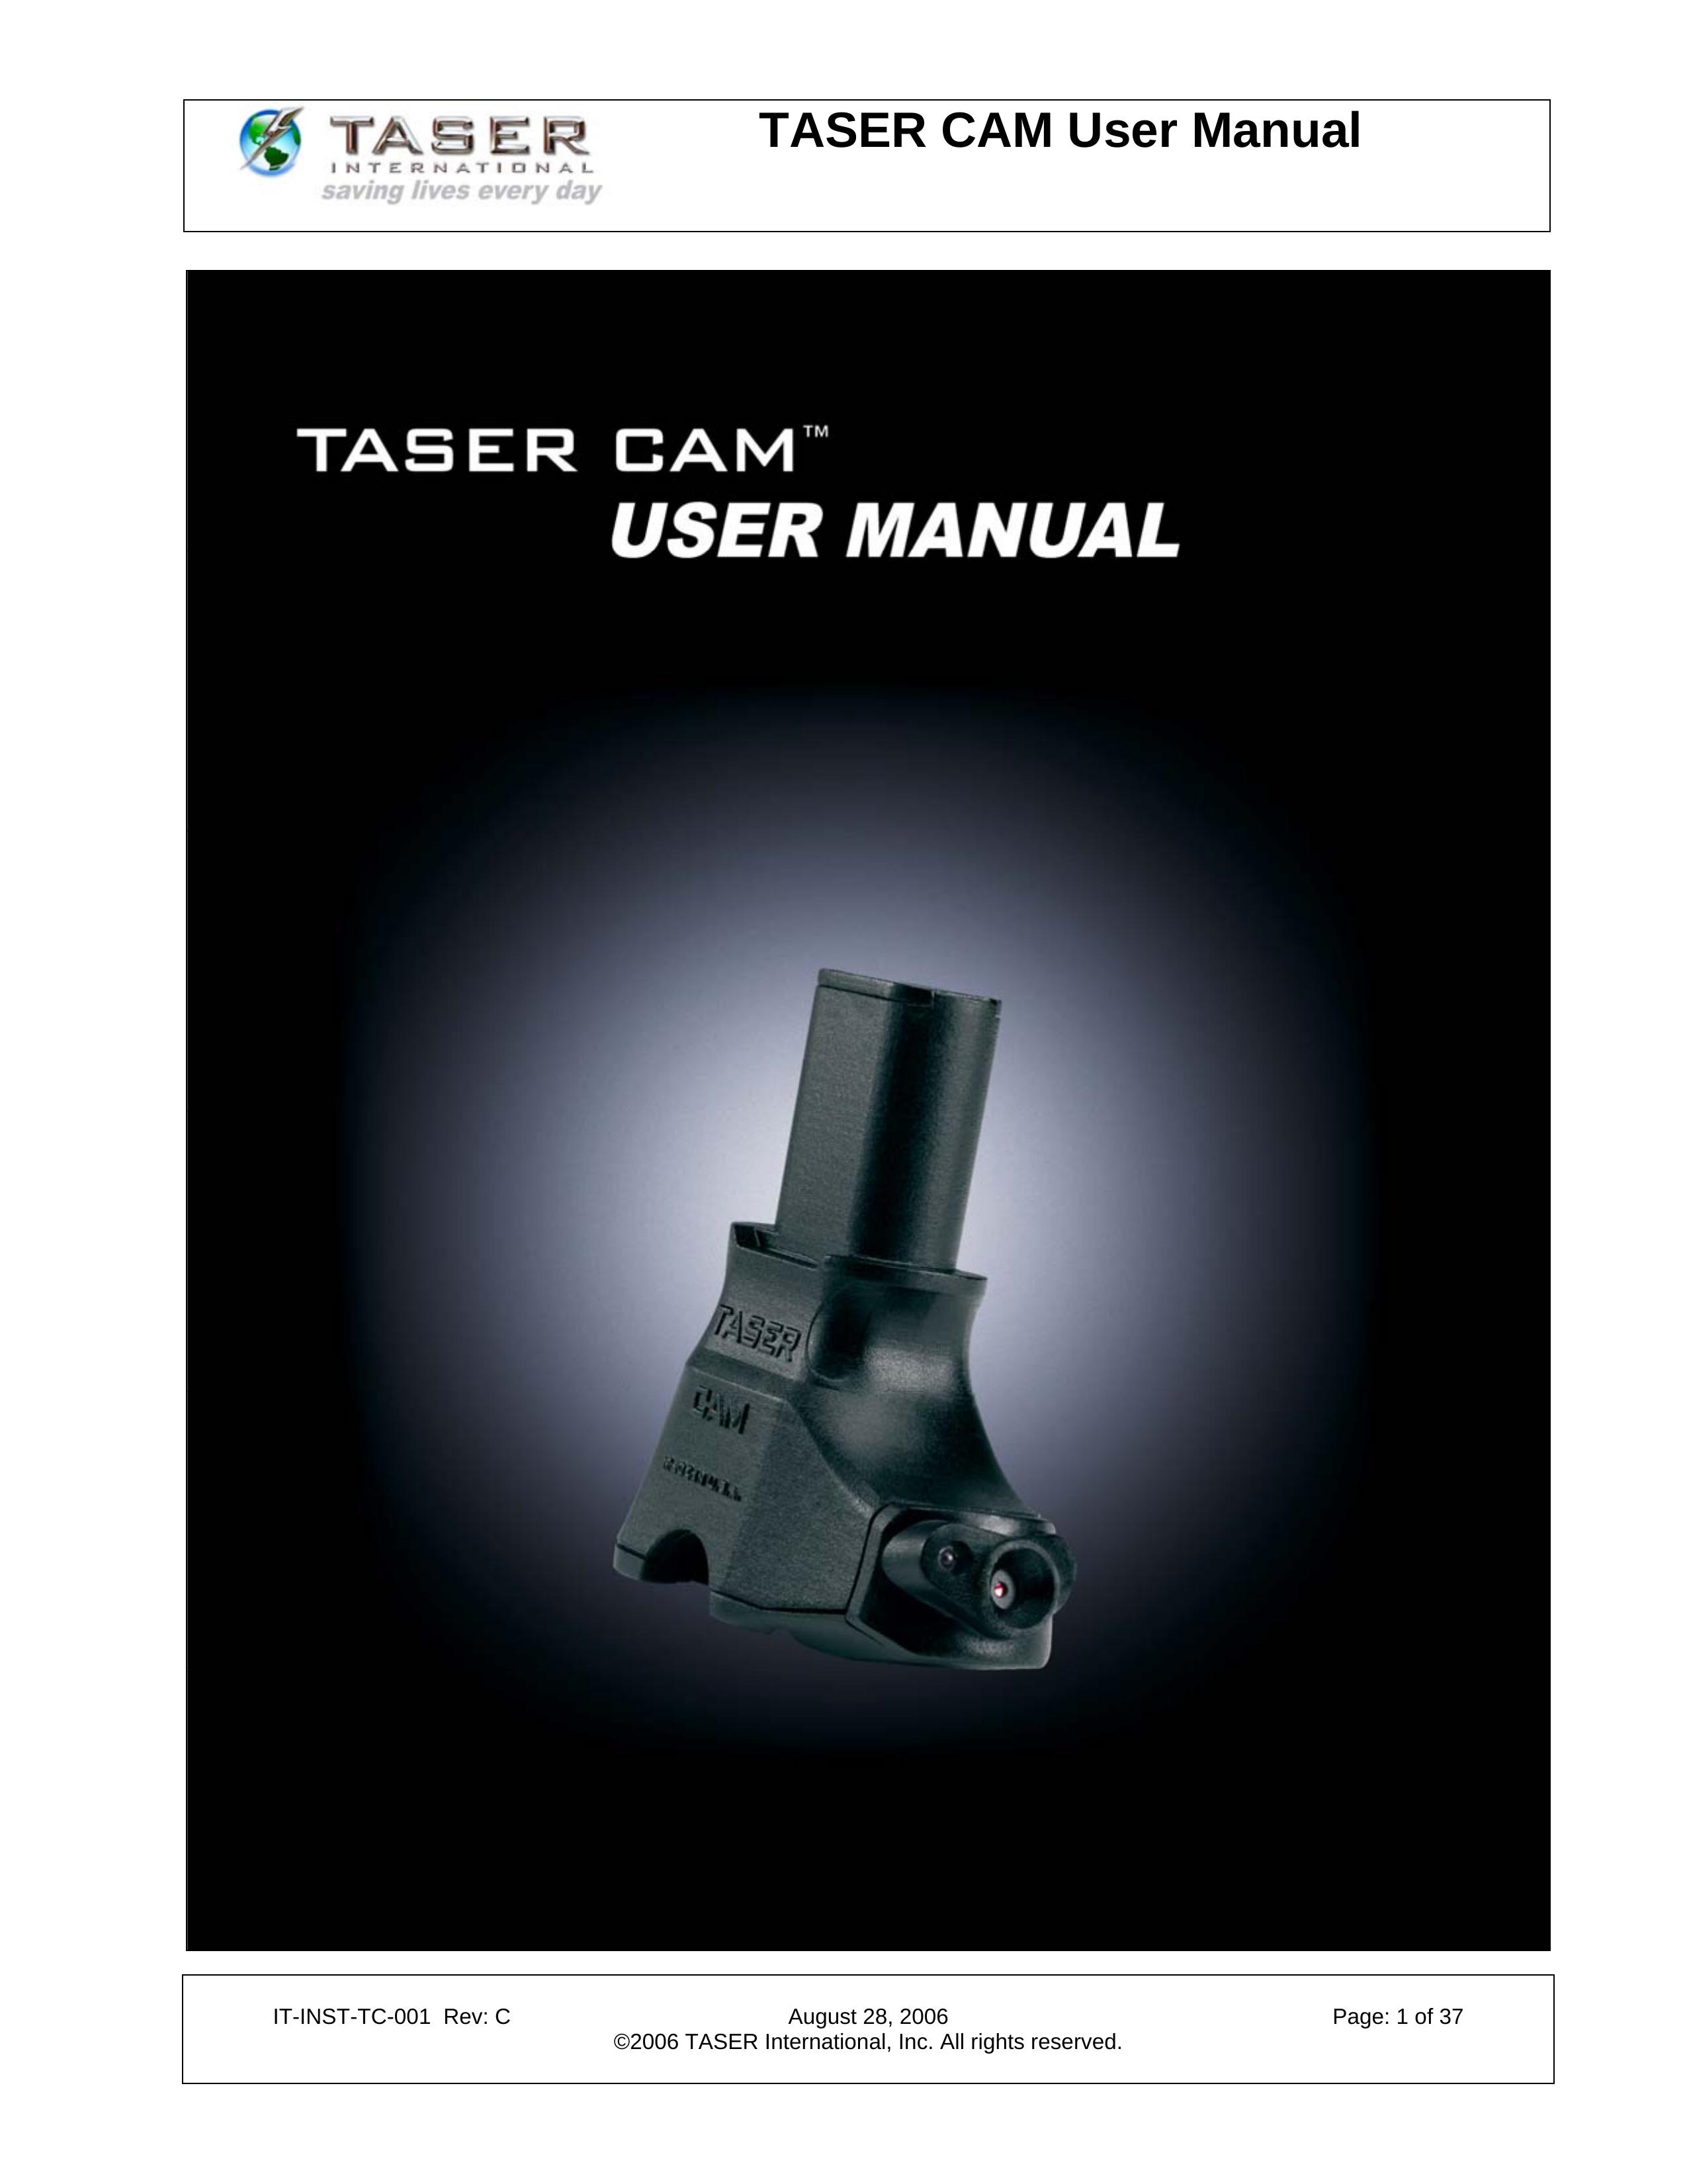 Taser IT-INST-TC-001 Digital Camera User Manual